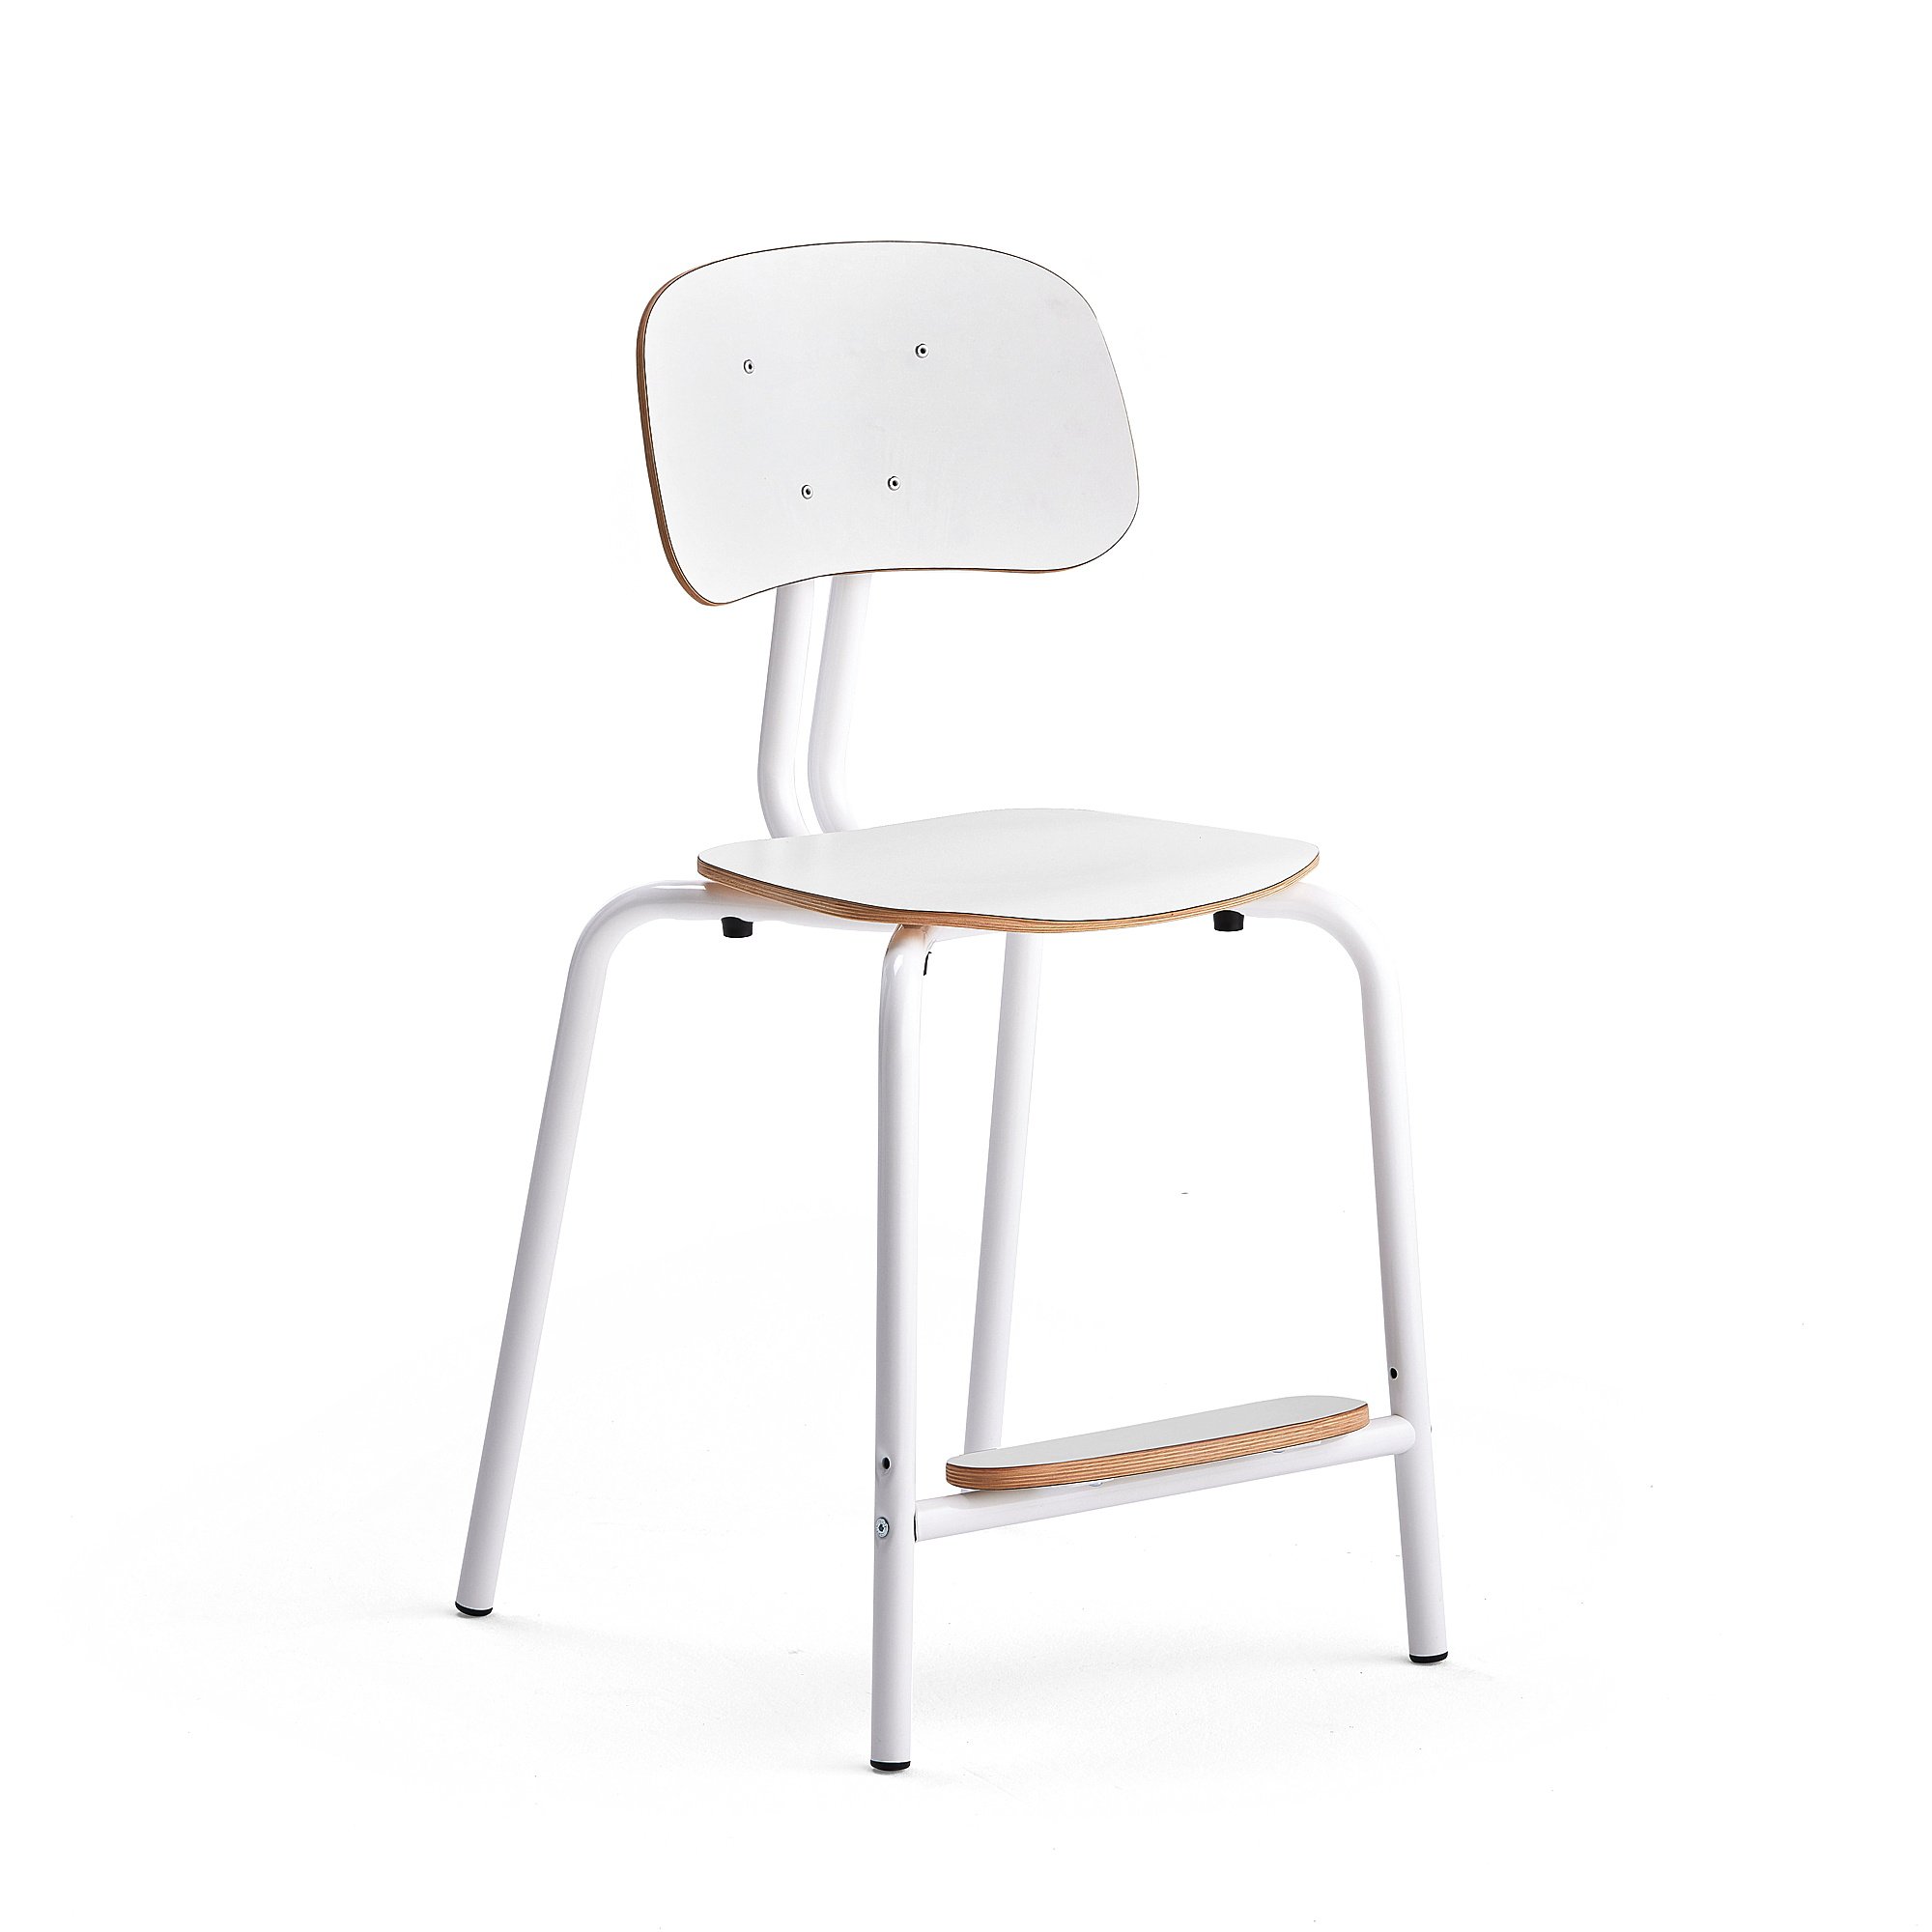 Školní židle YNGVE, 4 nohy, výška 520 mm, bílá